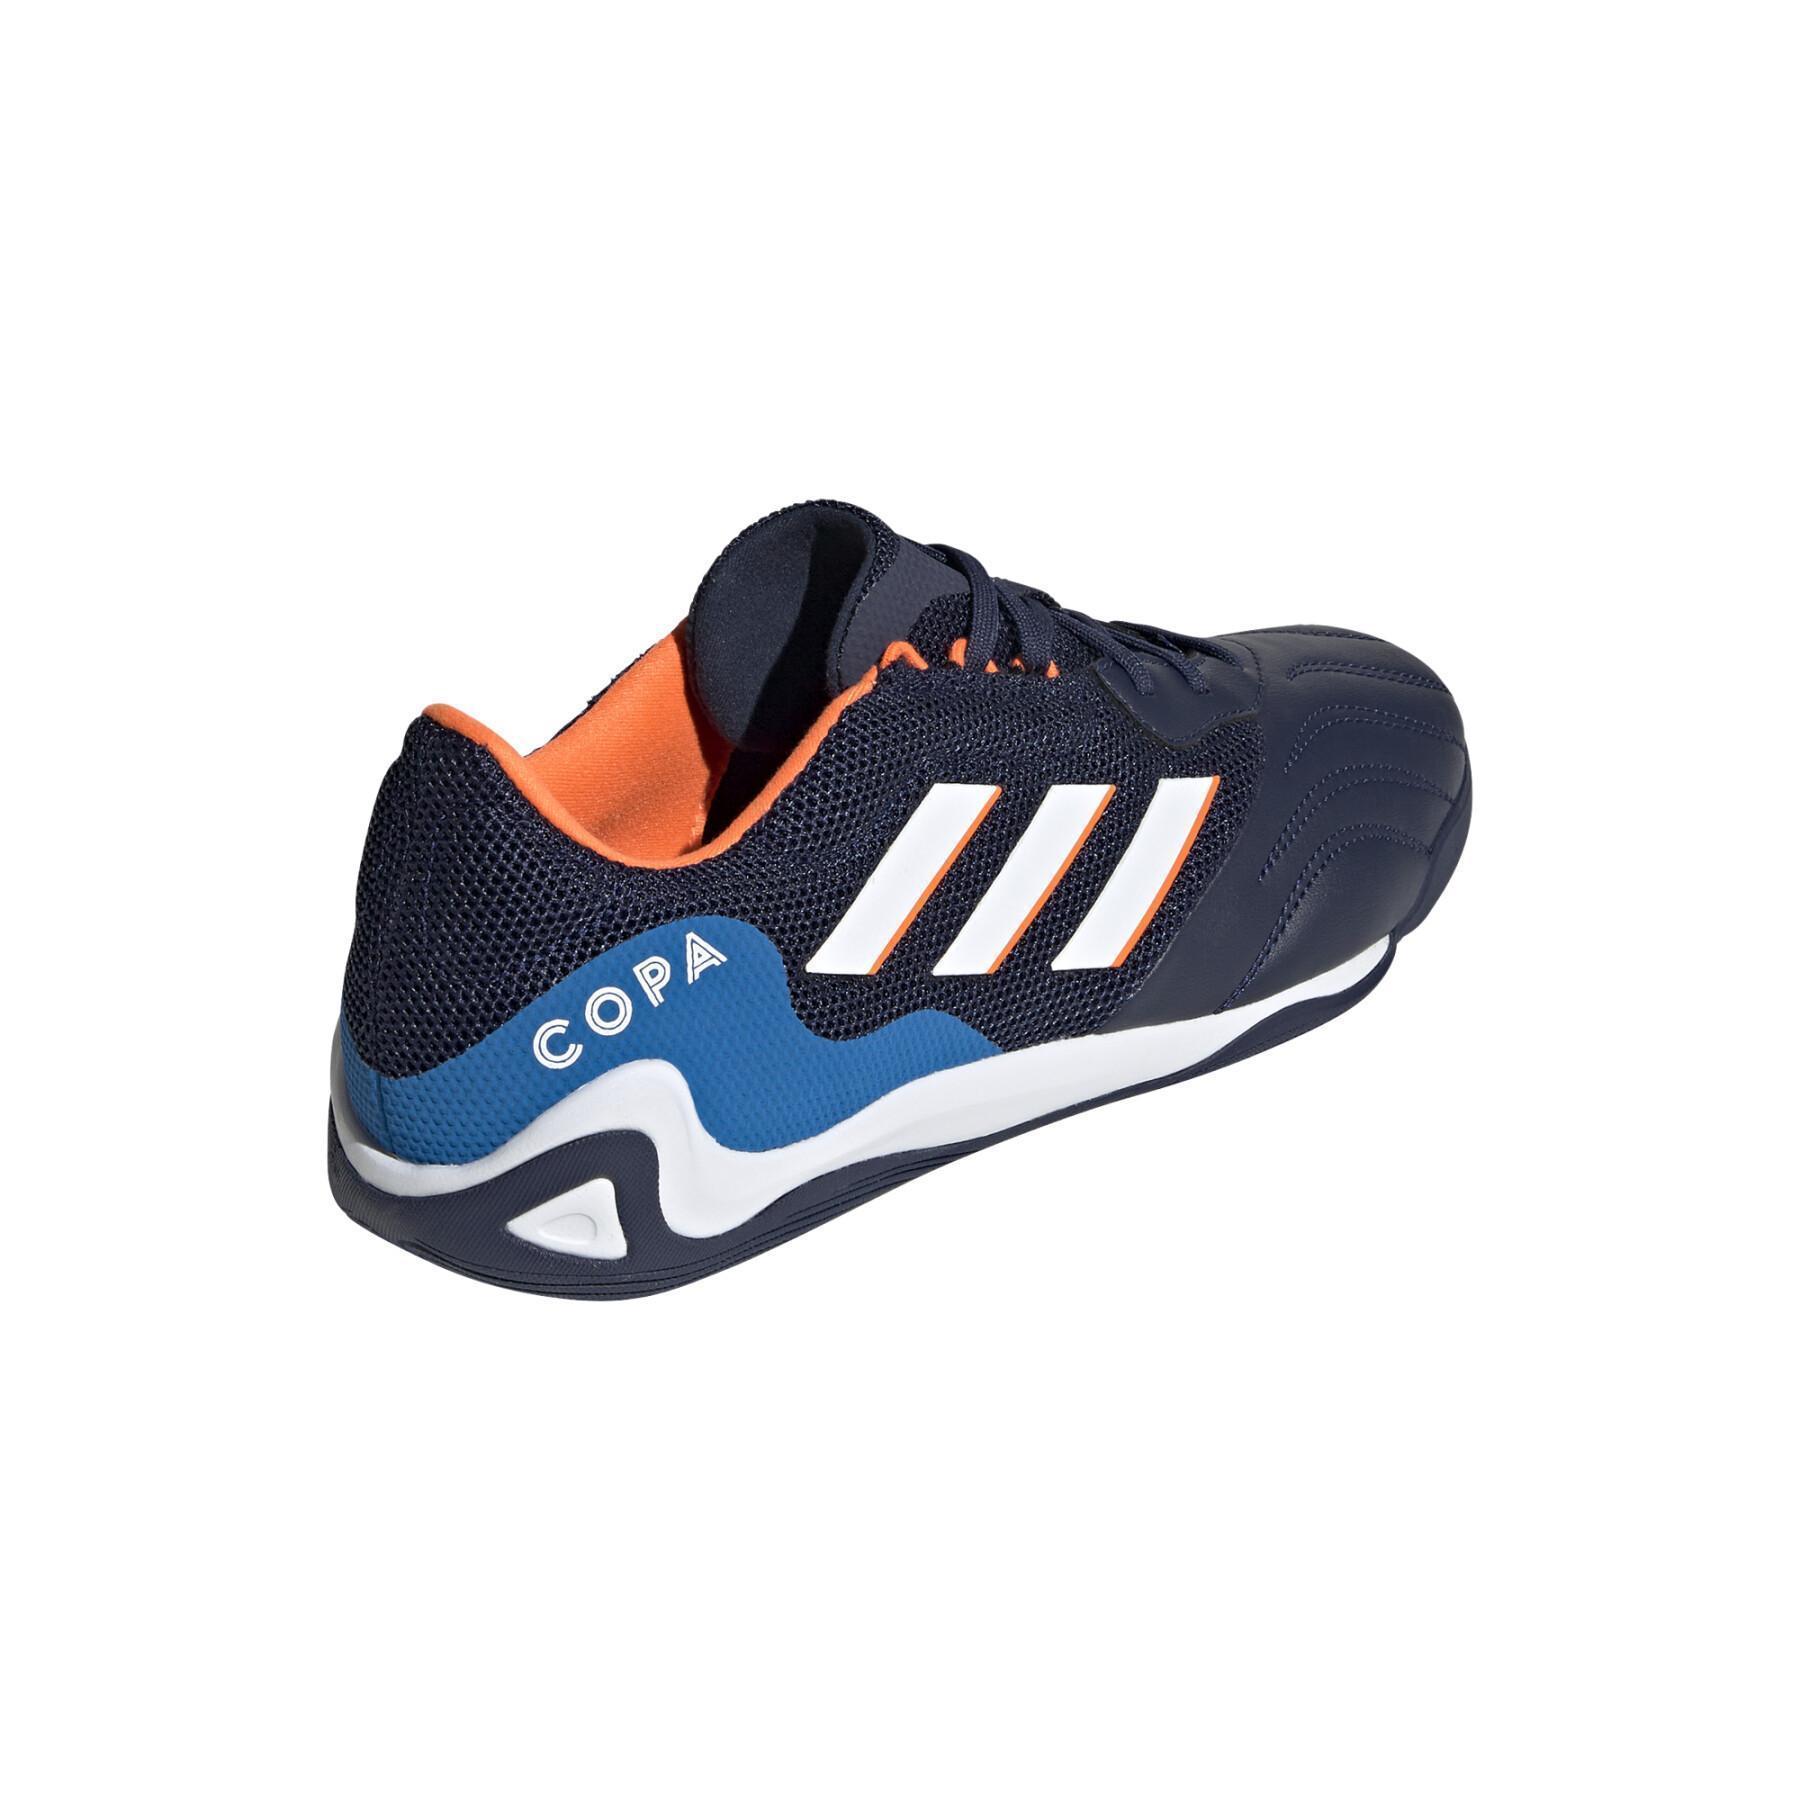 Chaussures de football adidas Copa Sense.3 IN Sala - Sapphire Edge Pack